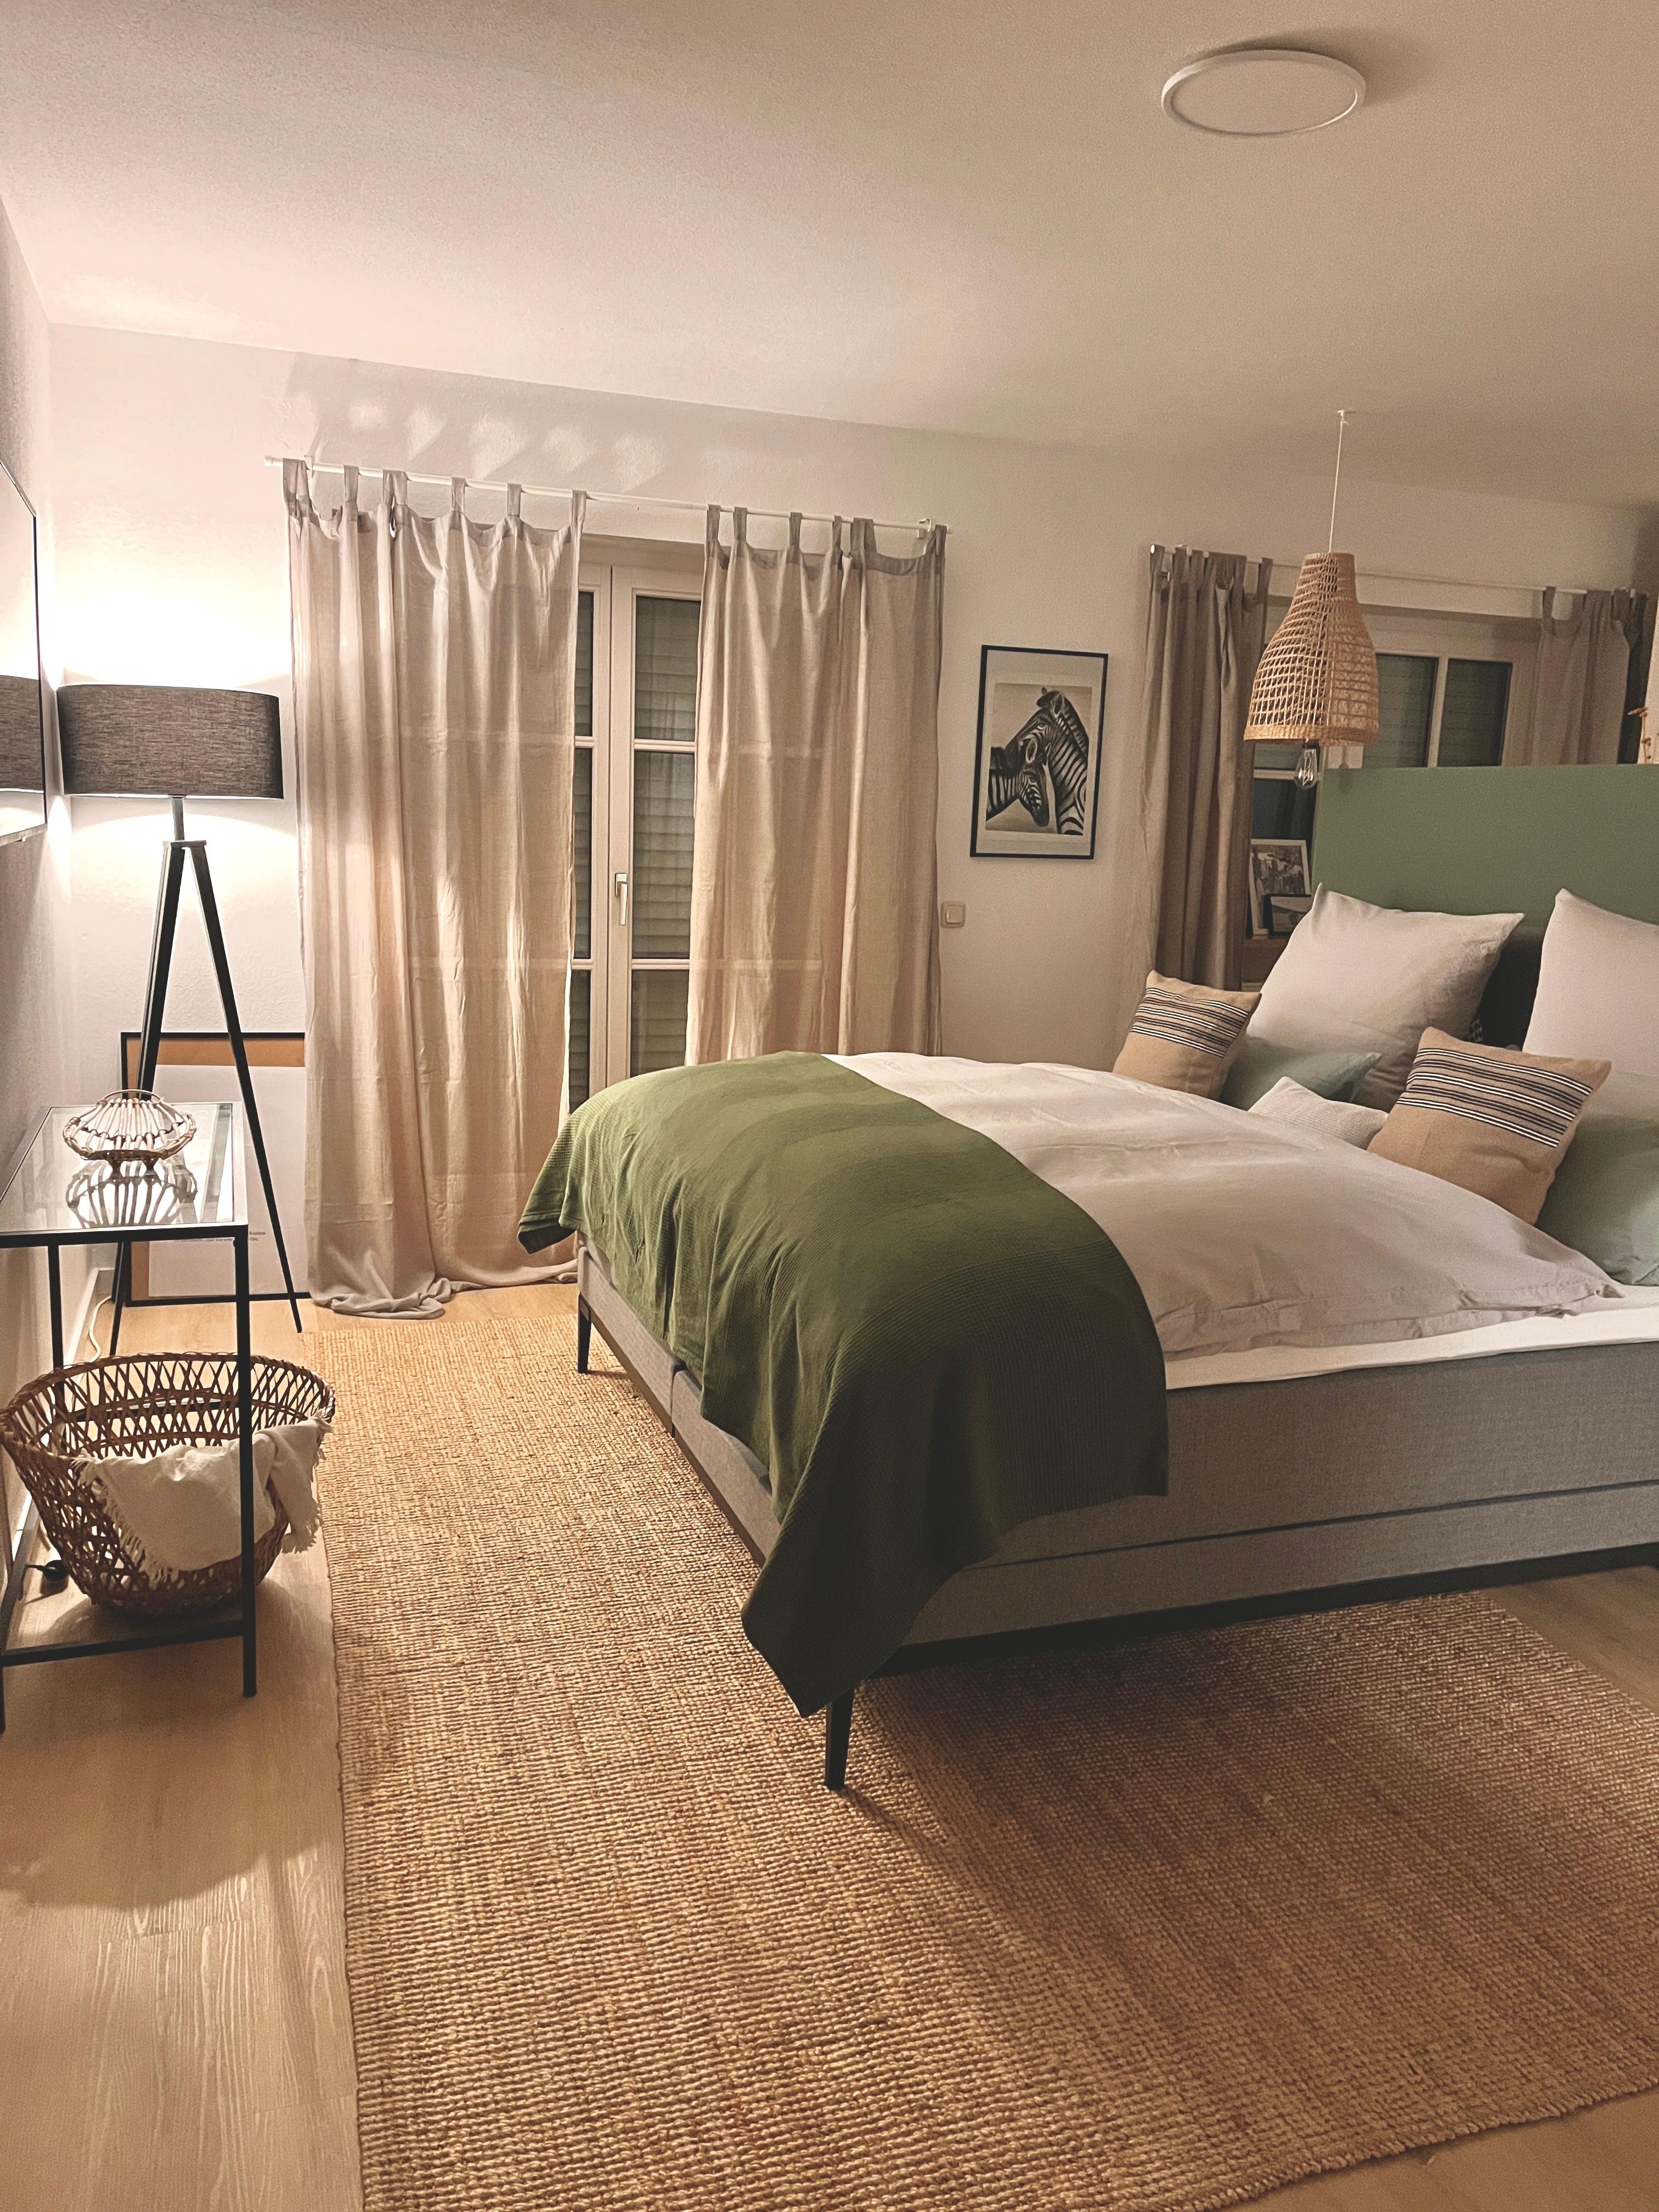 nighty 🌙
#schlafzimmer#schlafzimmerinspo#bedroom#happyweekend#raumteiler#friday#interiordesign#schönerwohnenfarbe